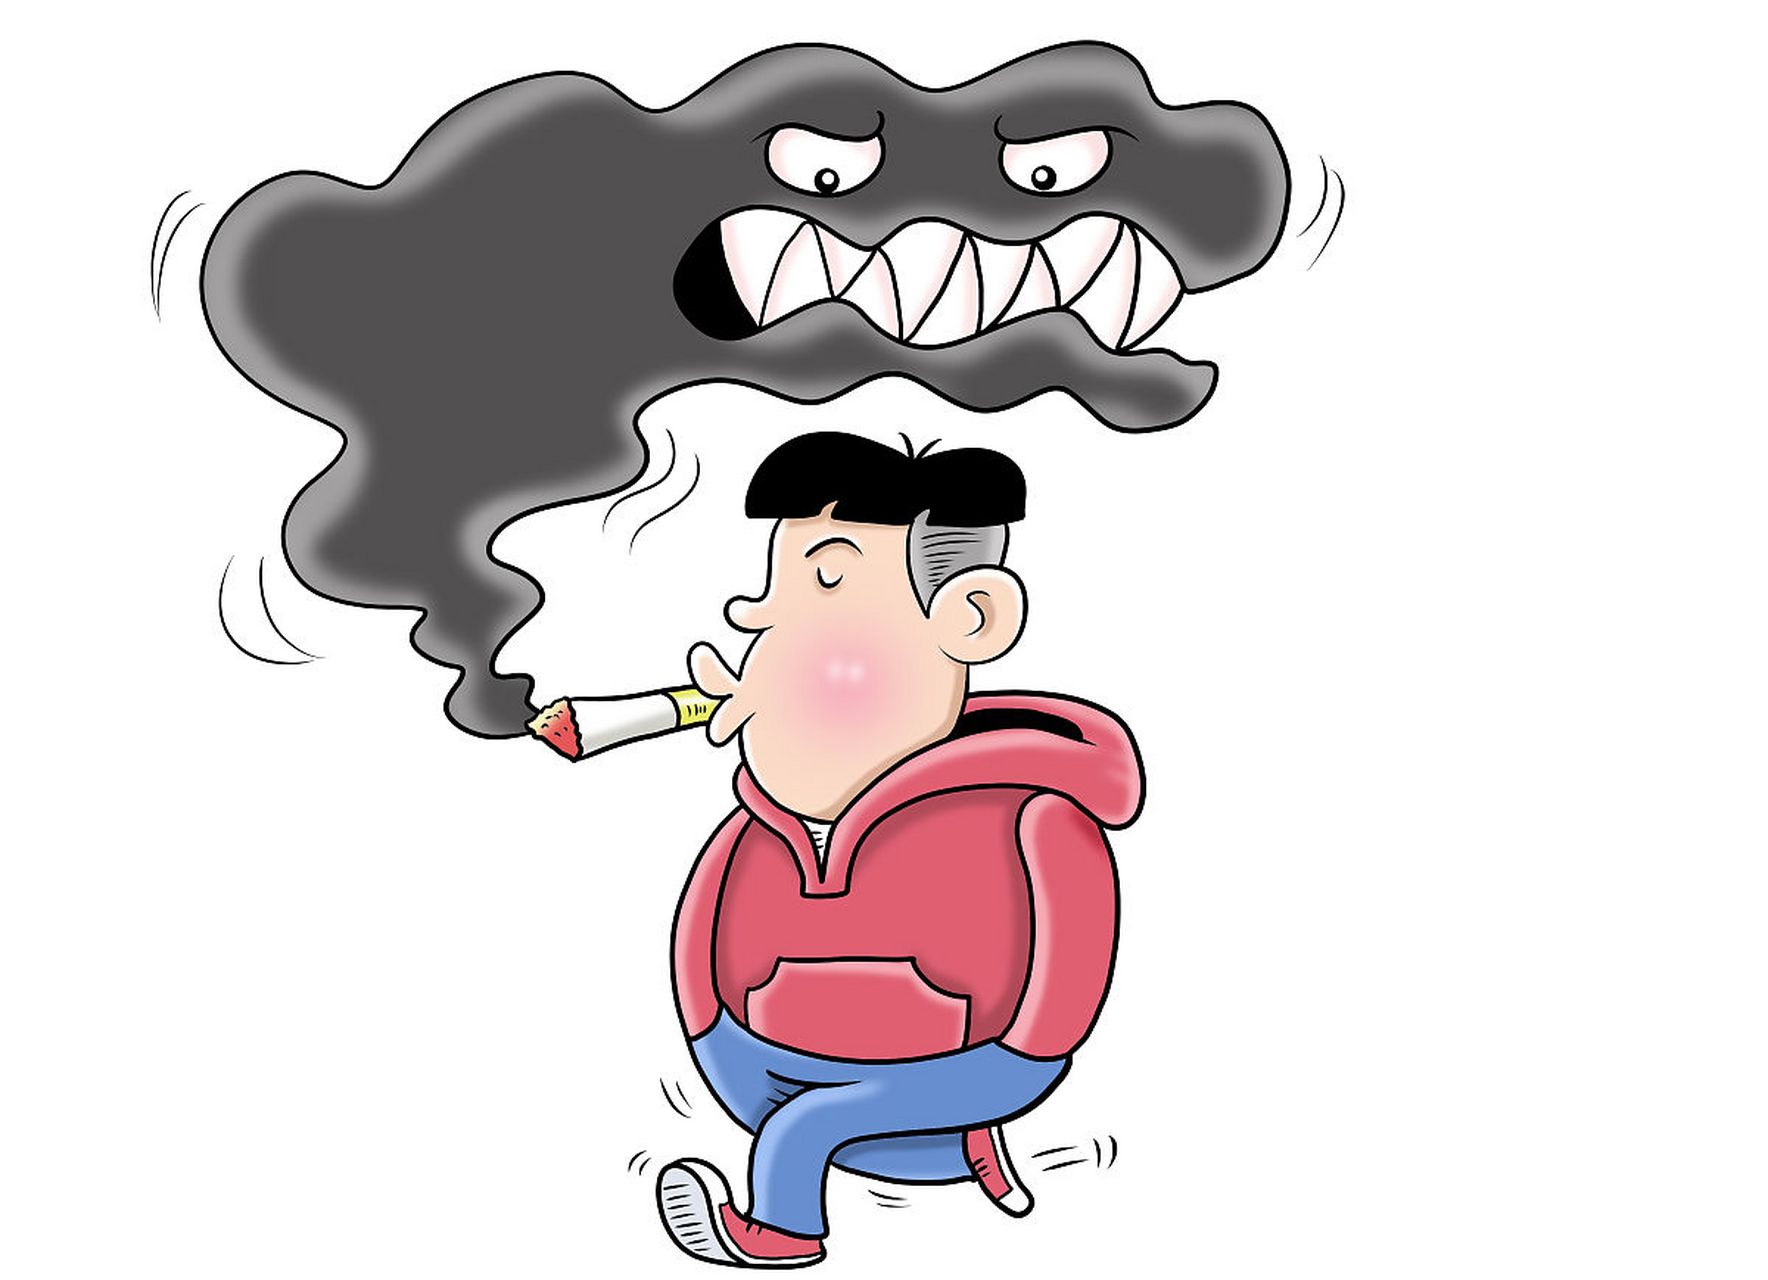 吸烟有害健康 漫画图片